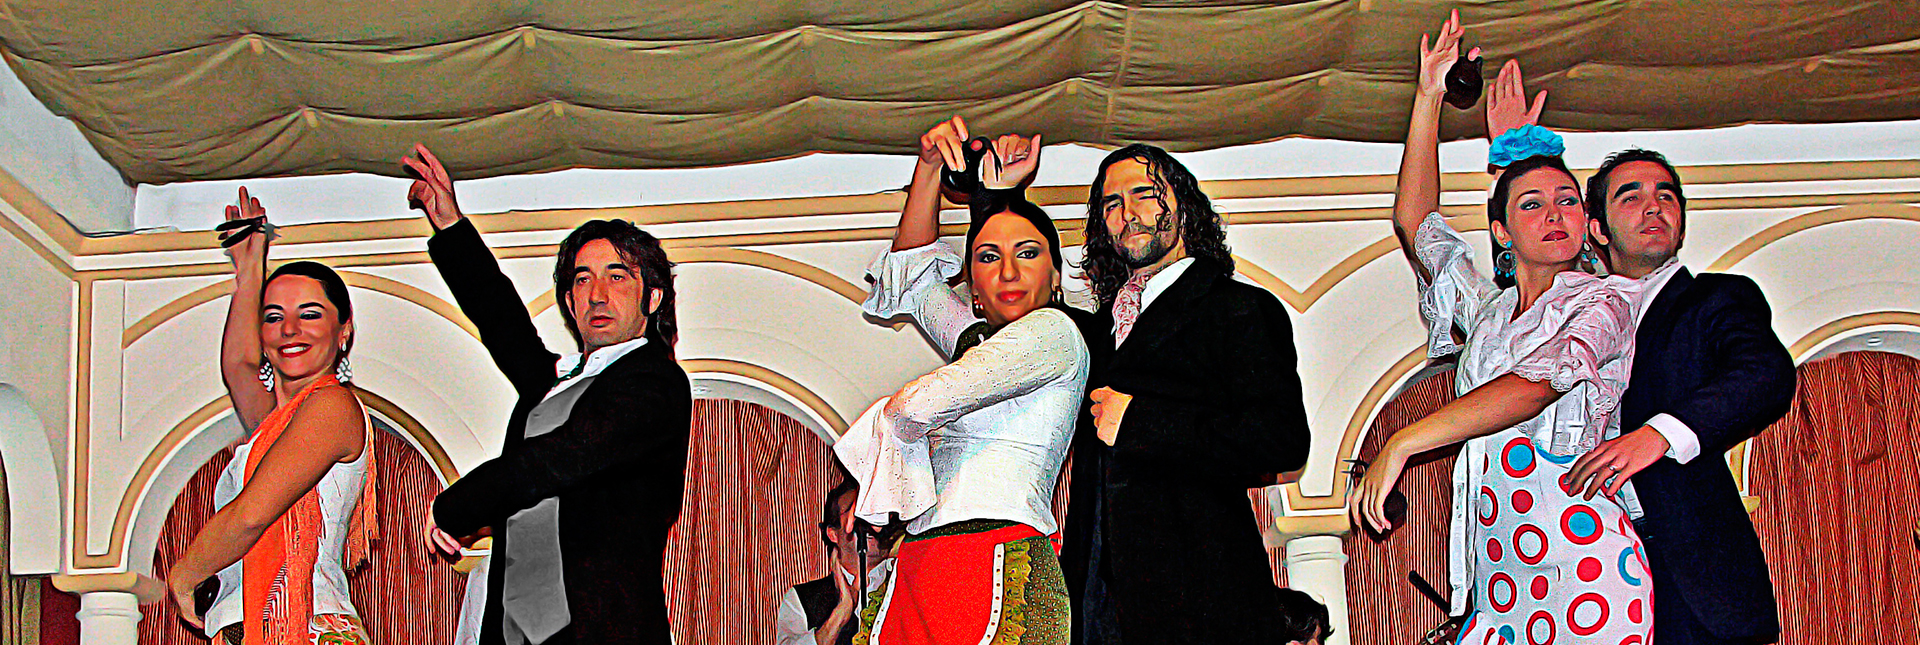 Clase de Flamenco y Espectáculo Flamenco en “Torres Bermejas”